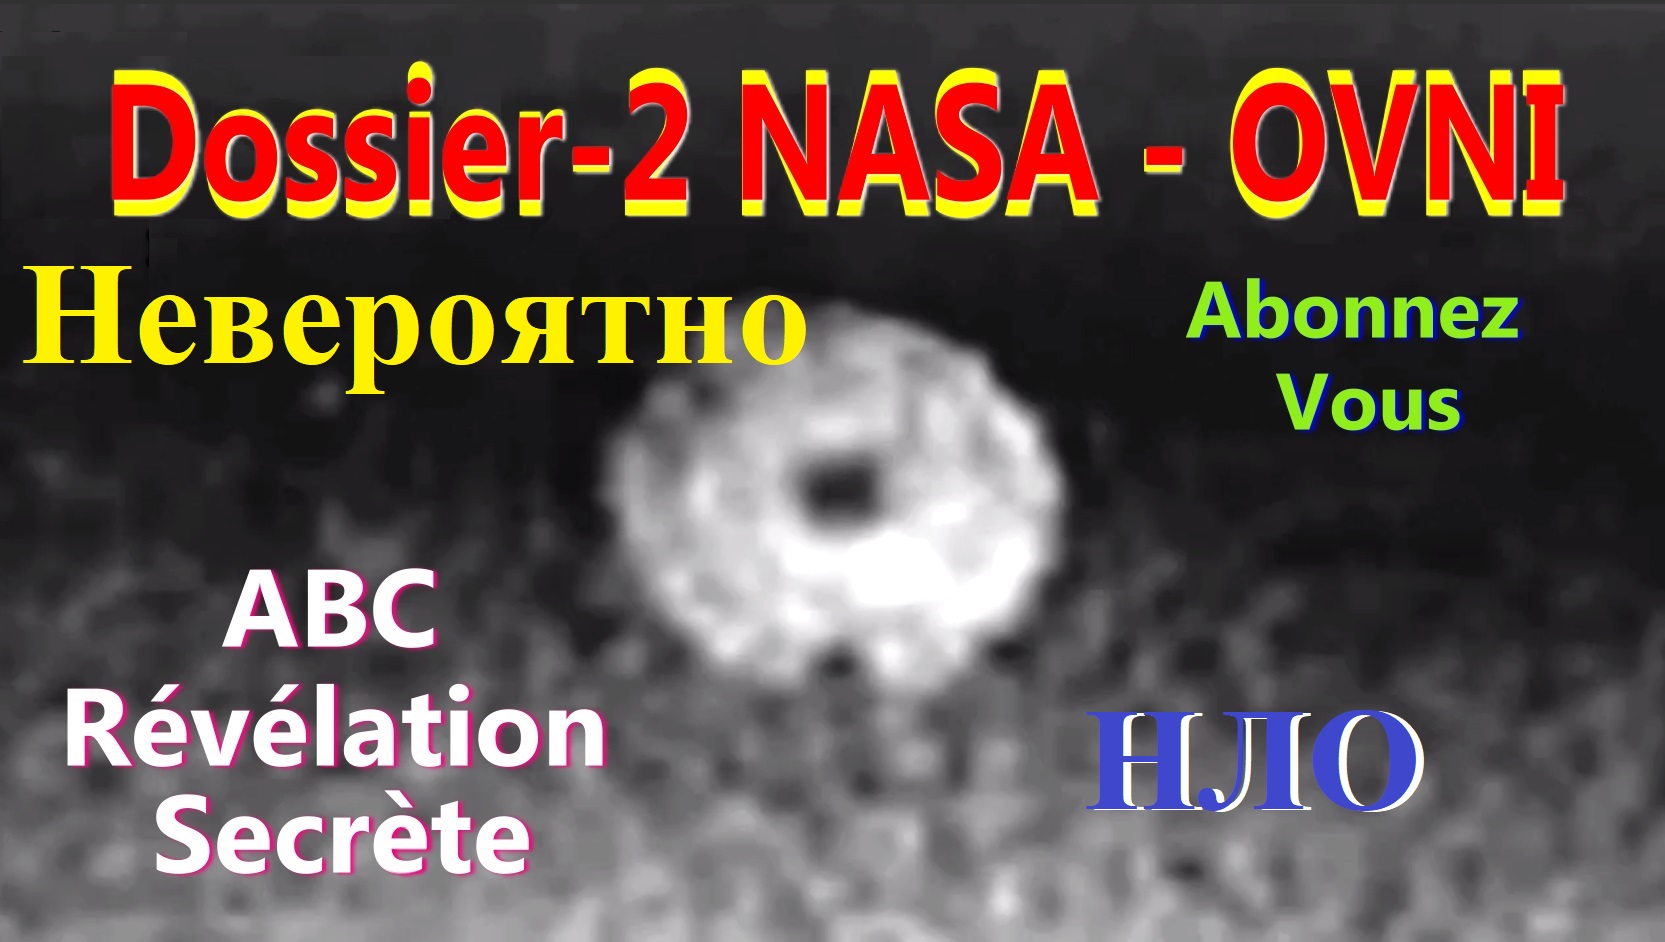 Des OVNIS autour de la Terre dossier-2 NASA